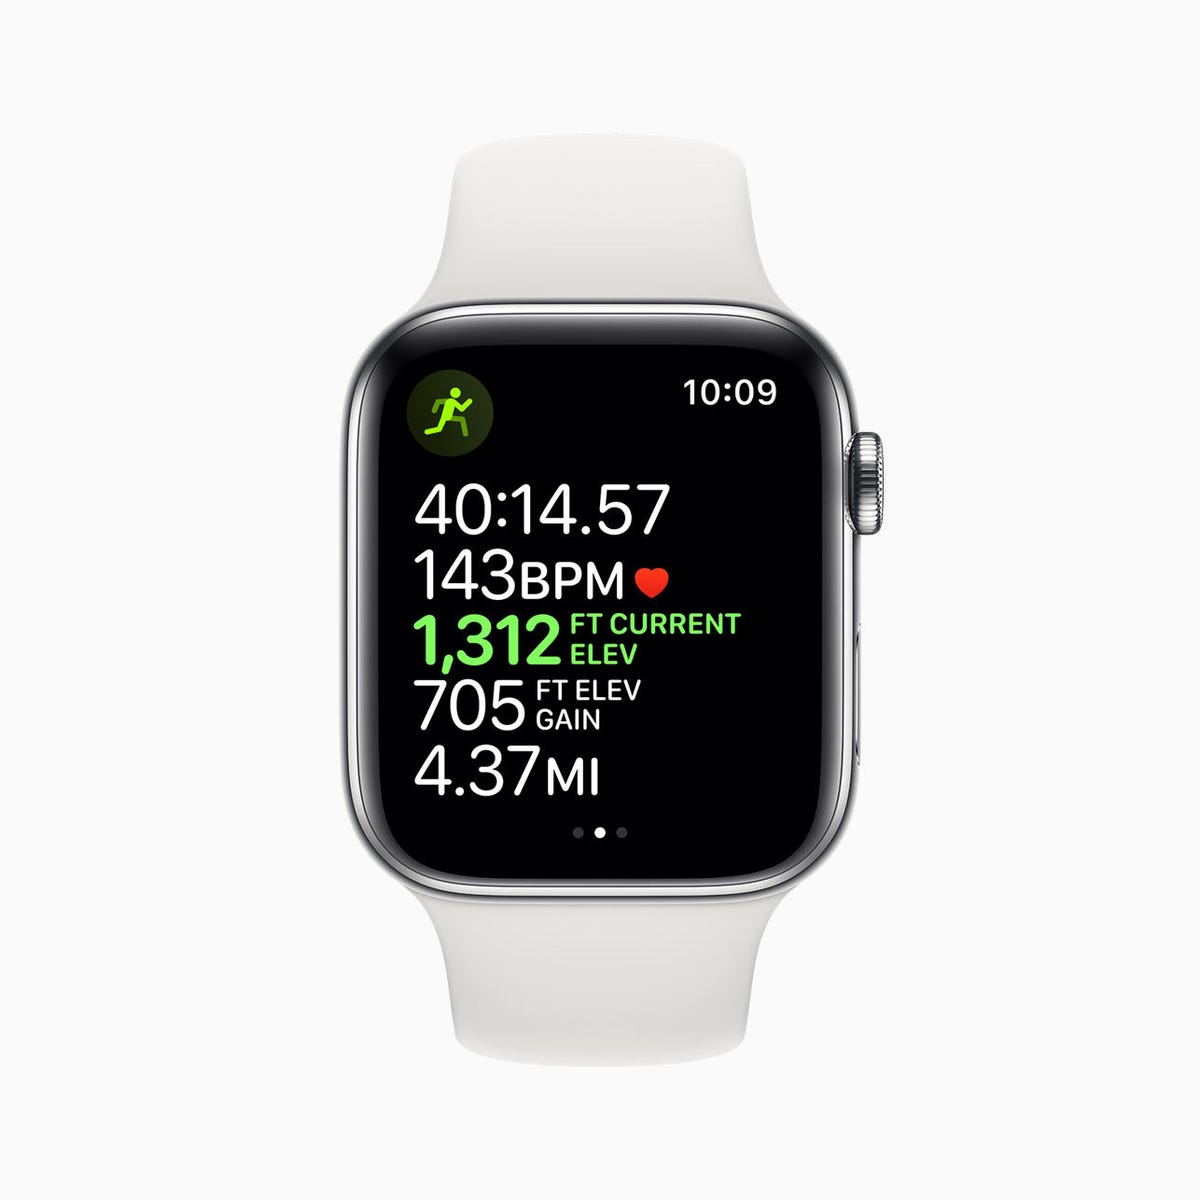 apple-watch-series-5-workout-outdoor-run-elevation-open-goal-screen-091019